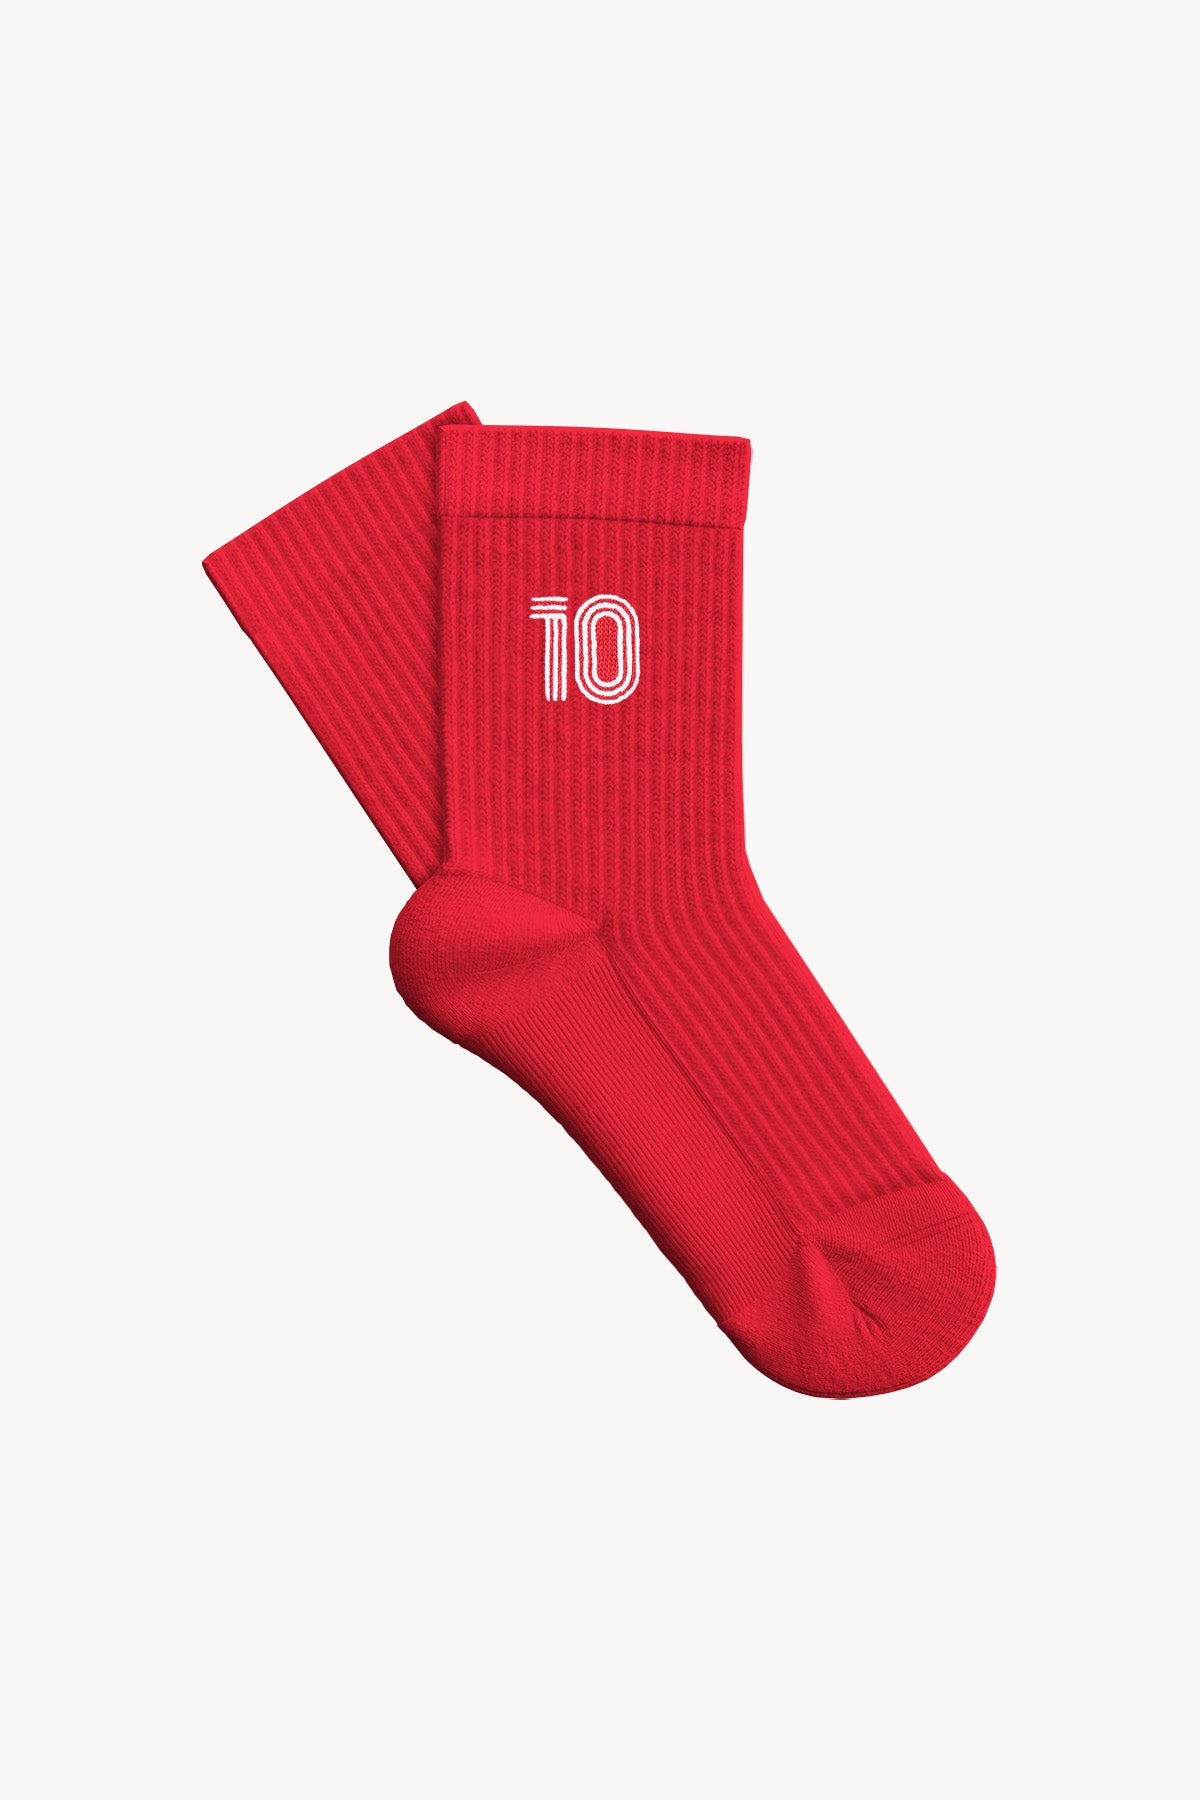 Türkiye 10 Havlu Çorap - Kırmızı